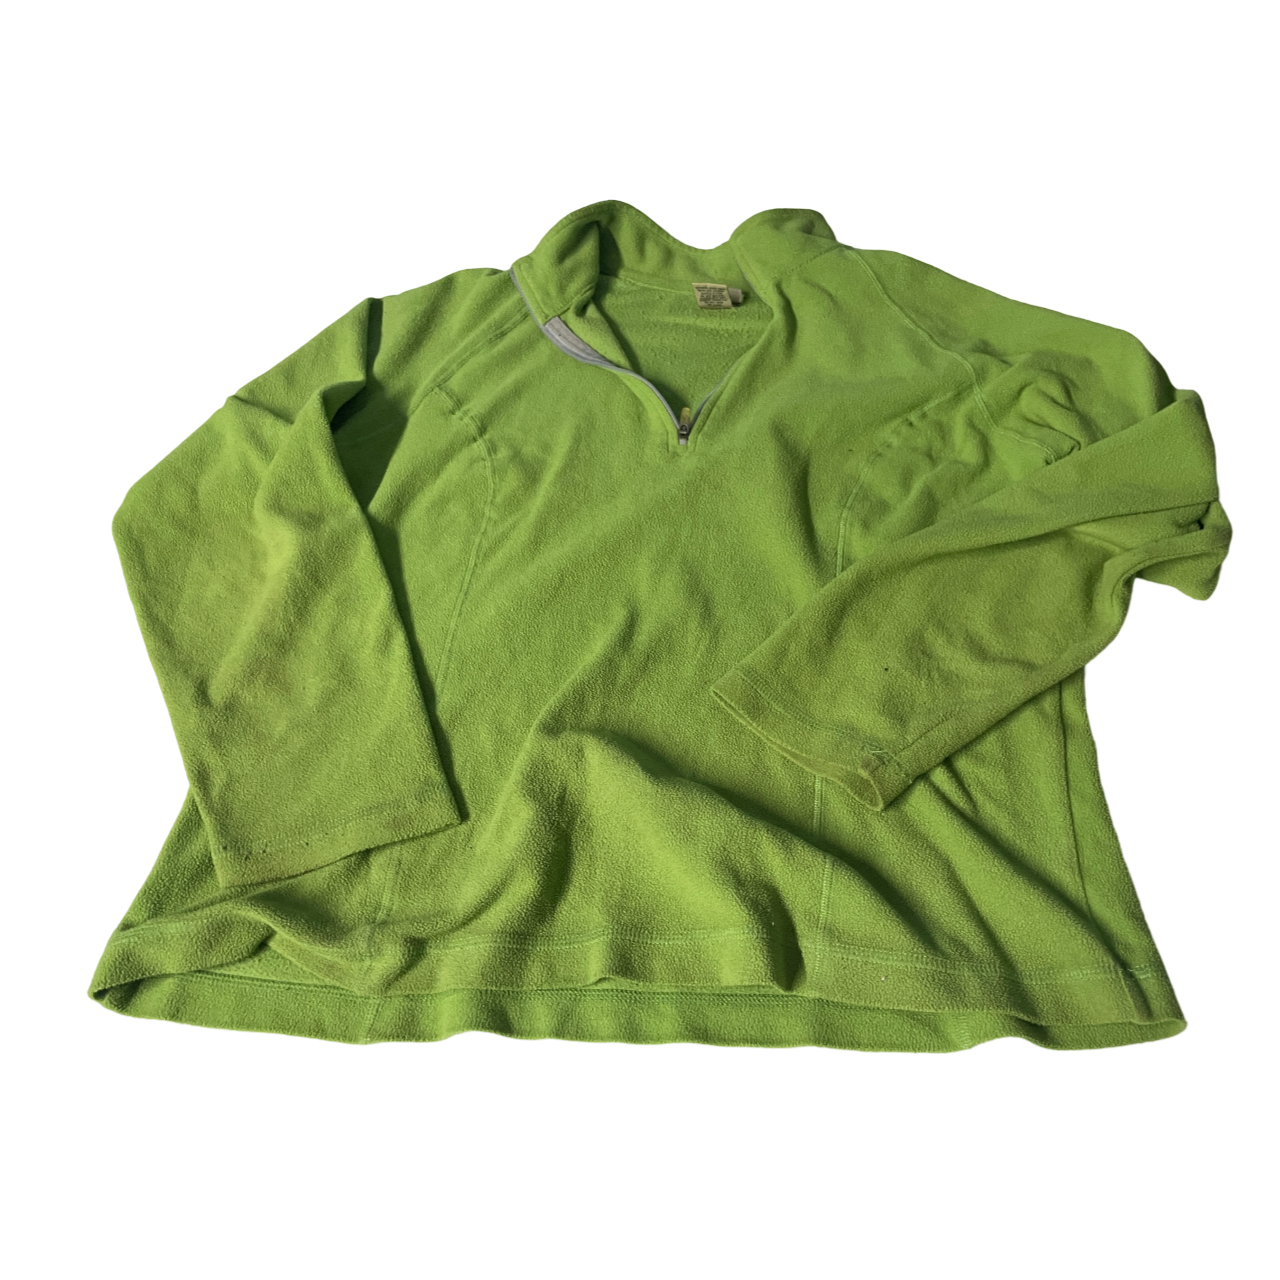 VTG LL Bean Sweater Womens Medium M Green Fleece 1/4 Snap Button Made In USA 90s Hiking Sweater l 25 w 20 SKU 5114